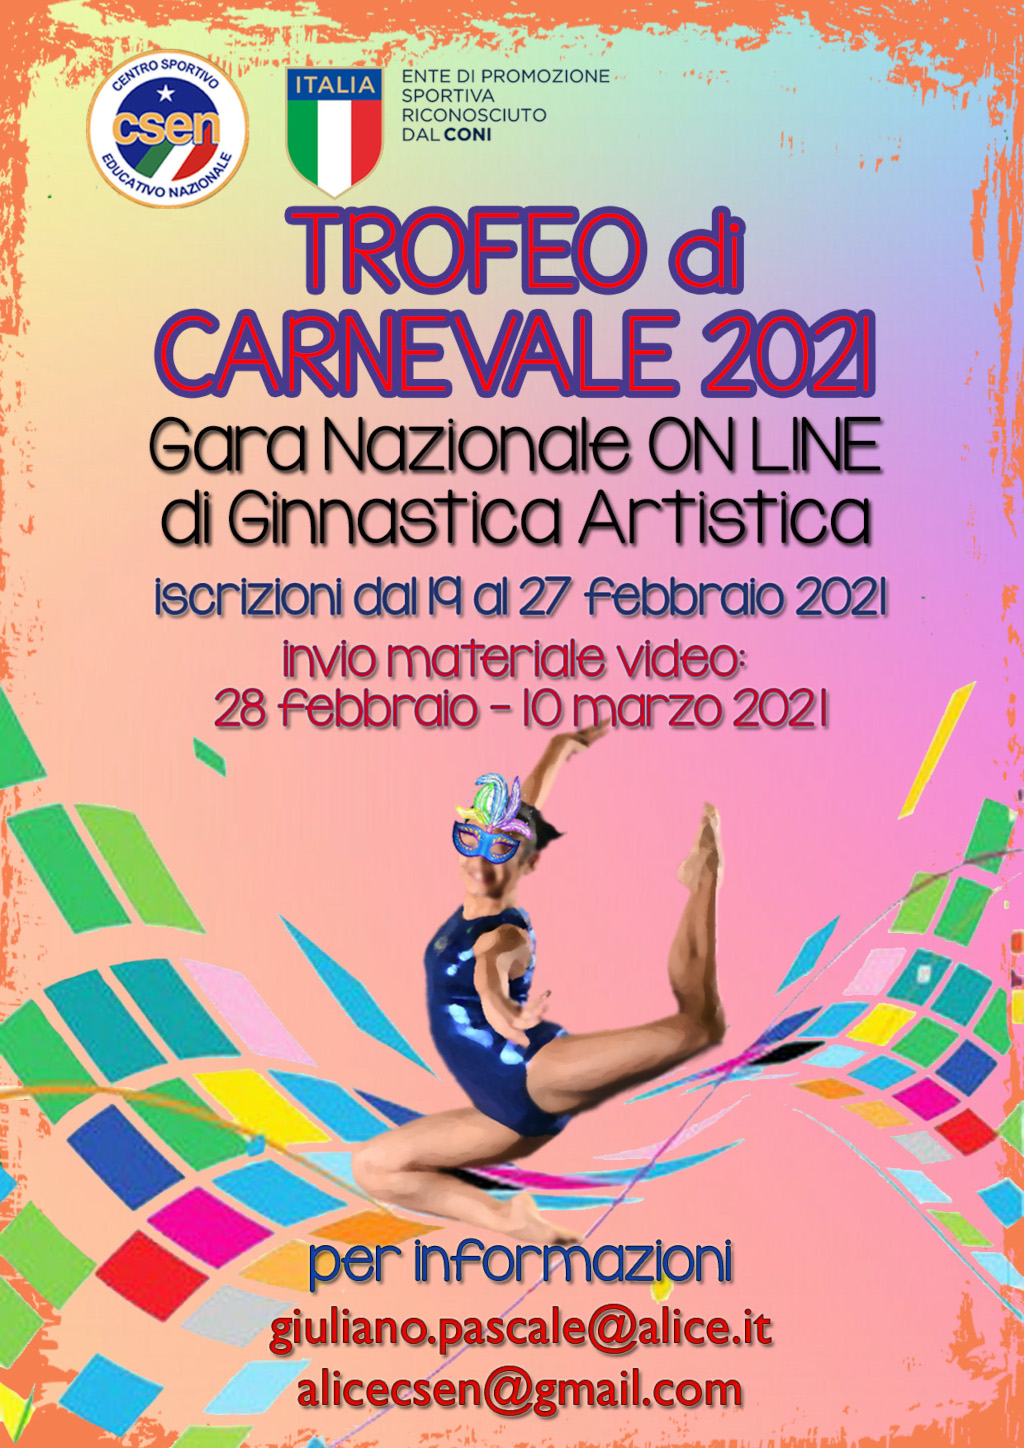 Ginnastica Artistica - Trofeo Online di Carnevale 2021